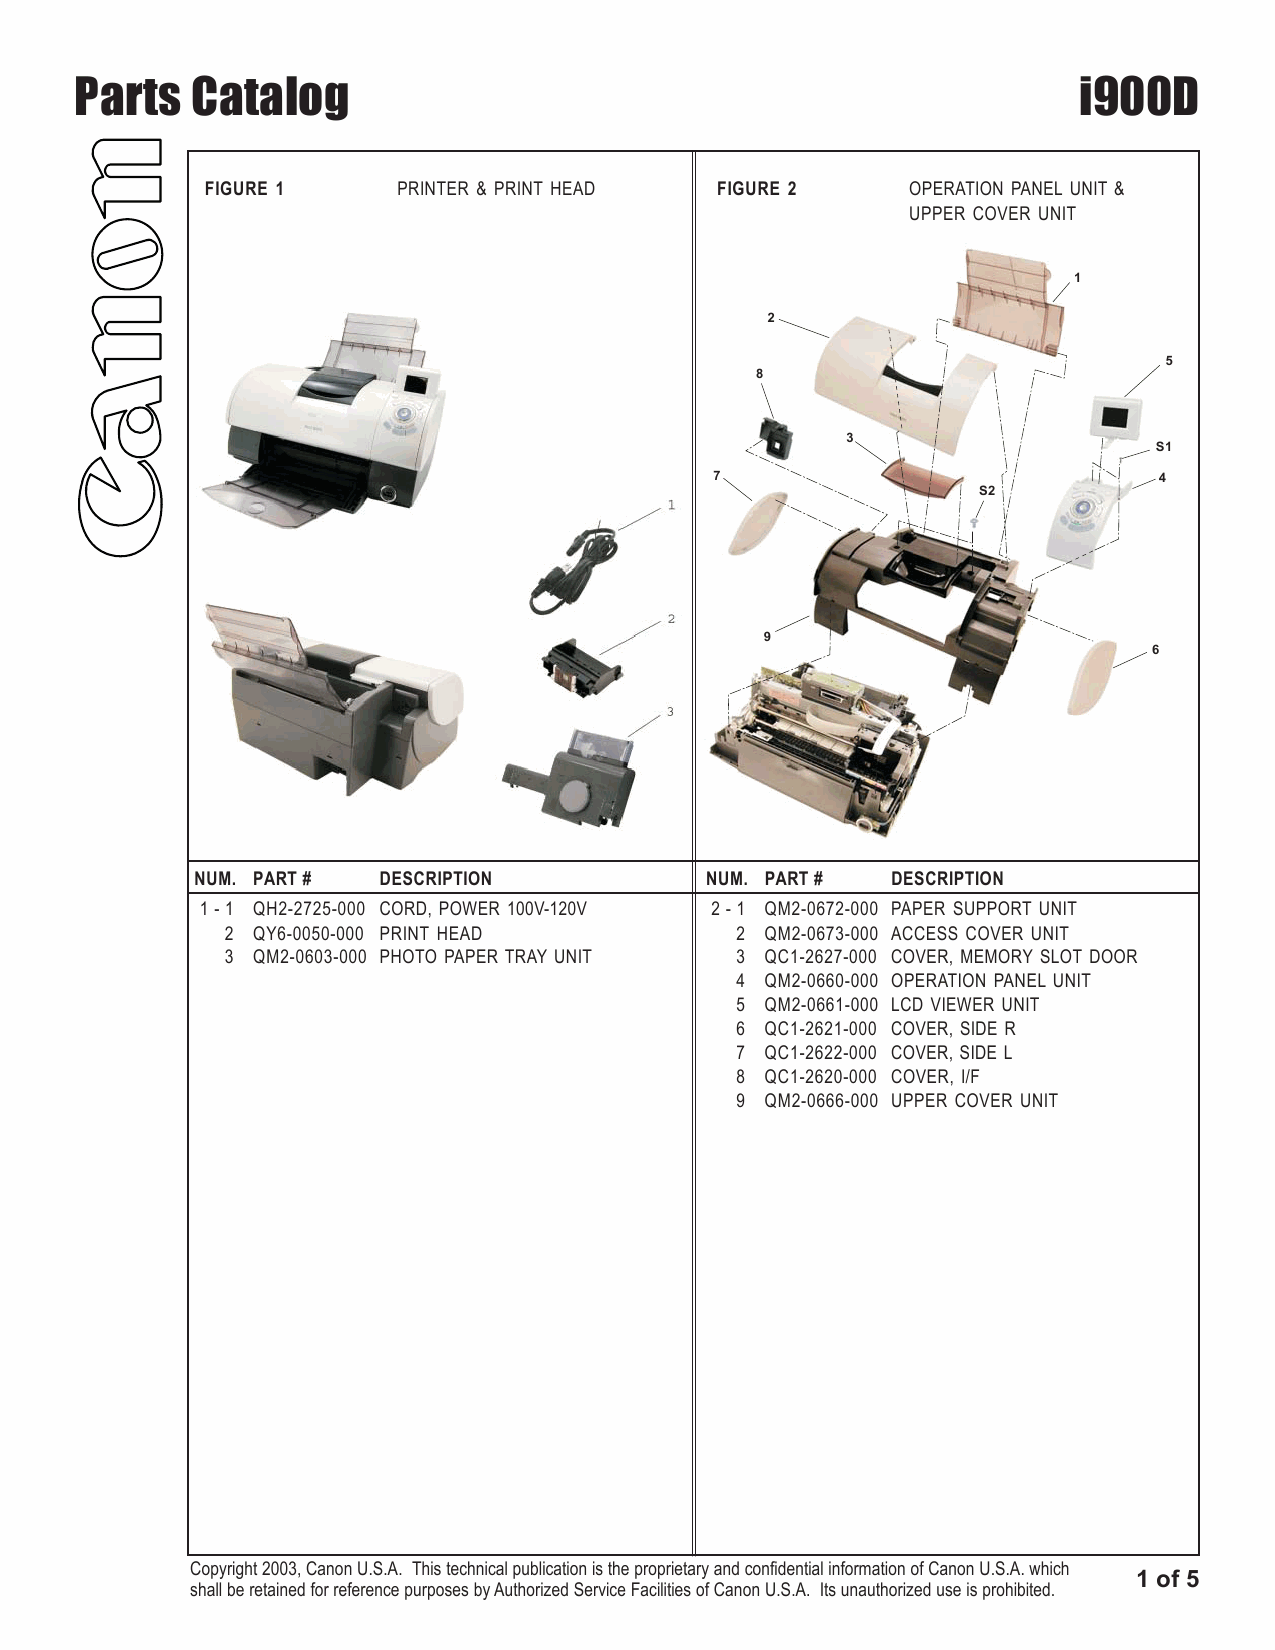 Canon PIXUS i900D Parts Catalog Manual-2